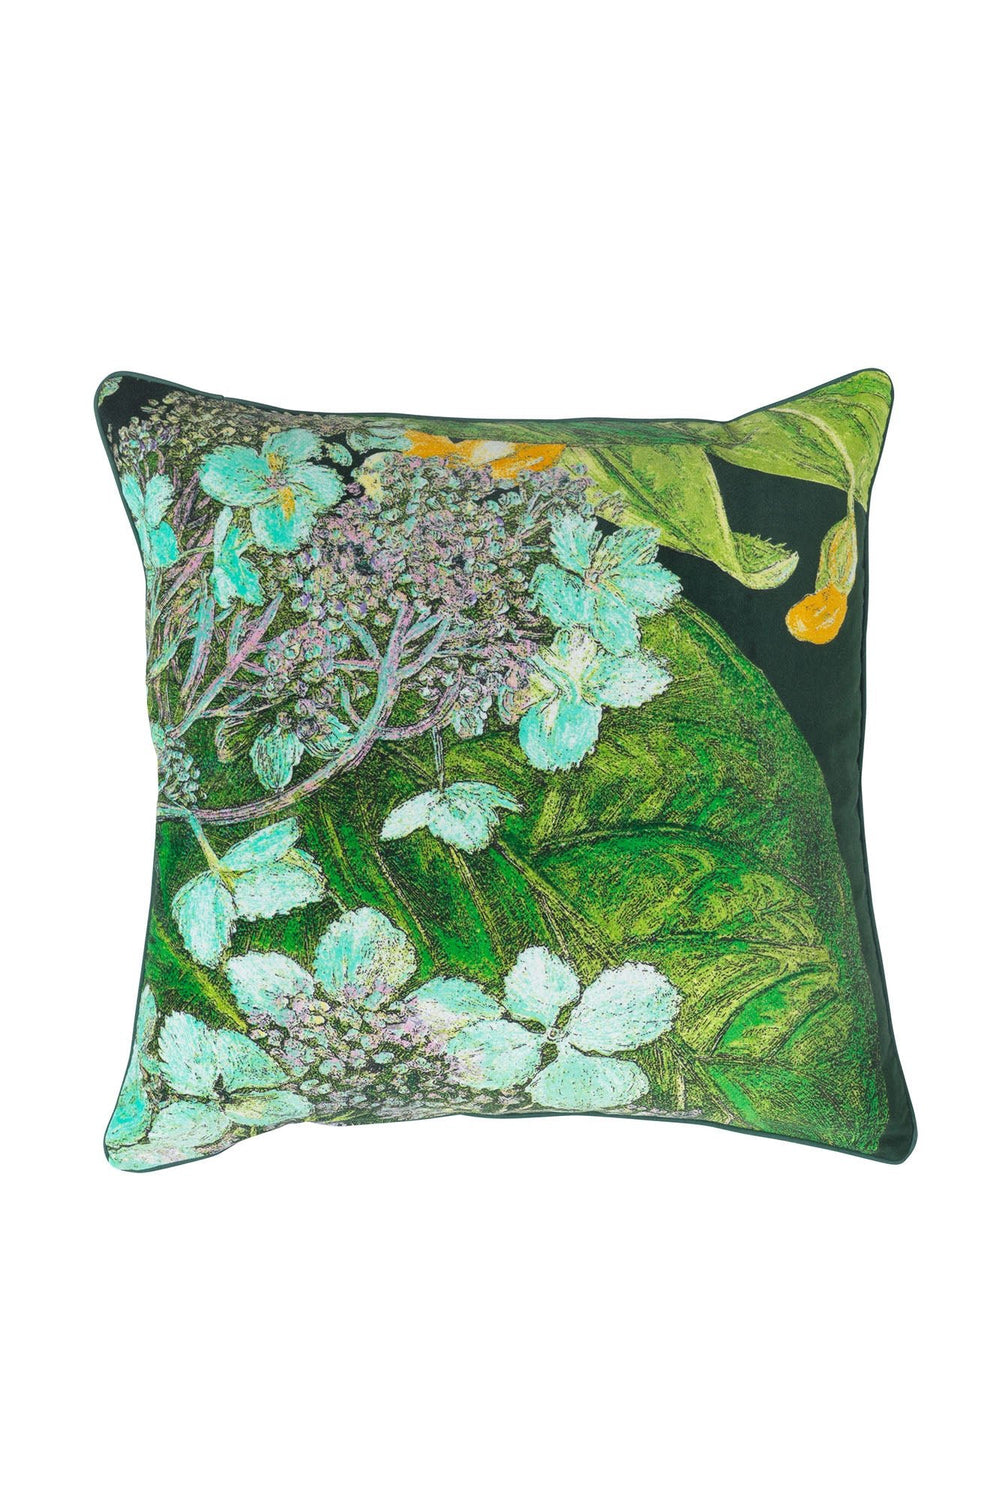 KEW Hydrangea Lime Velvet Square Cushion - One Hundred Stars